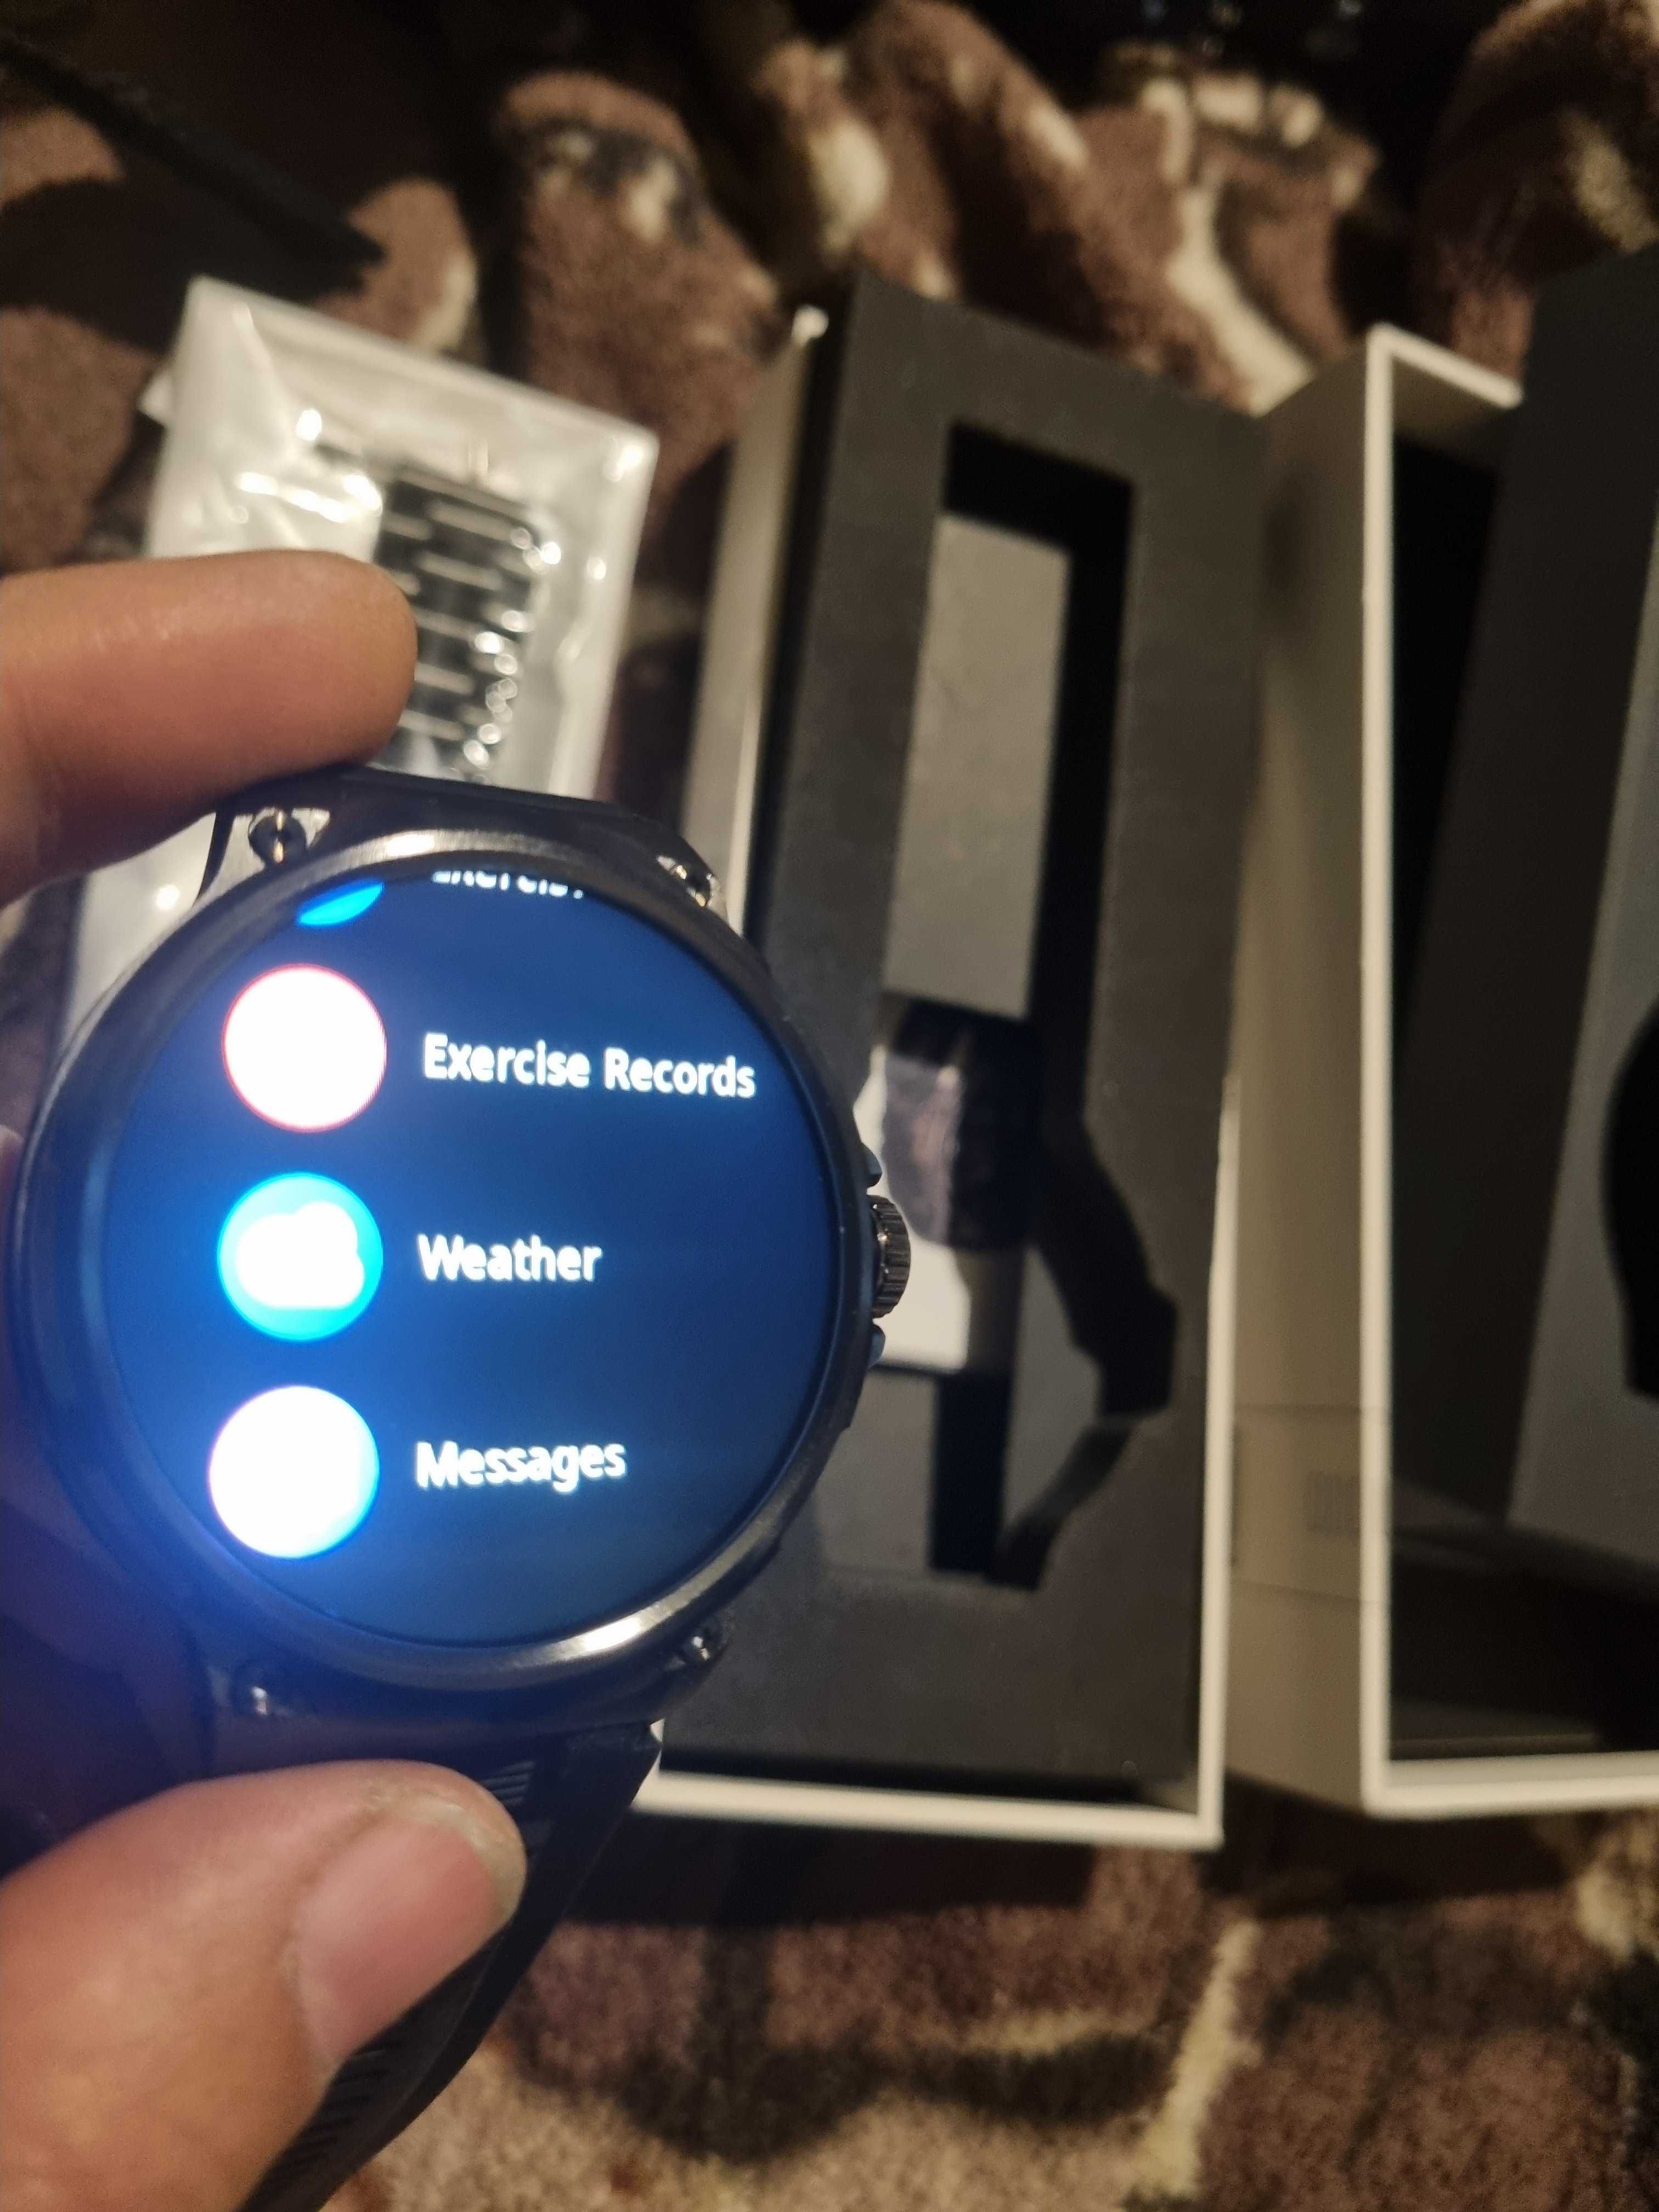 Ceas smartwatch cu display super amoled, microfon ,difuzor incorporat